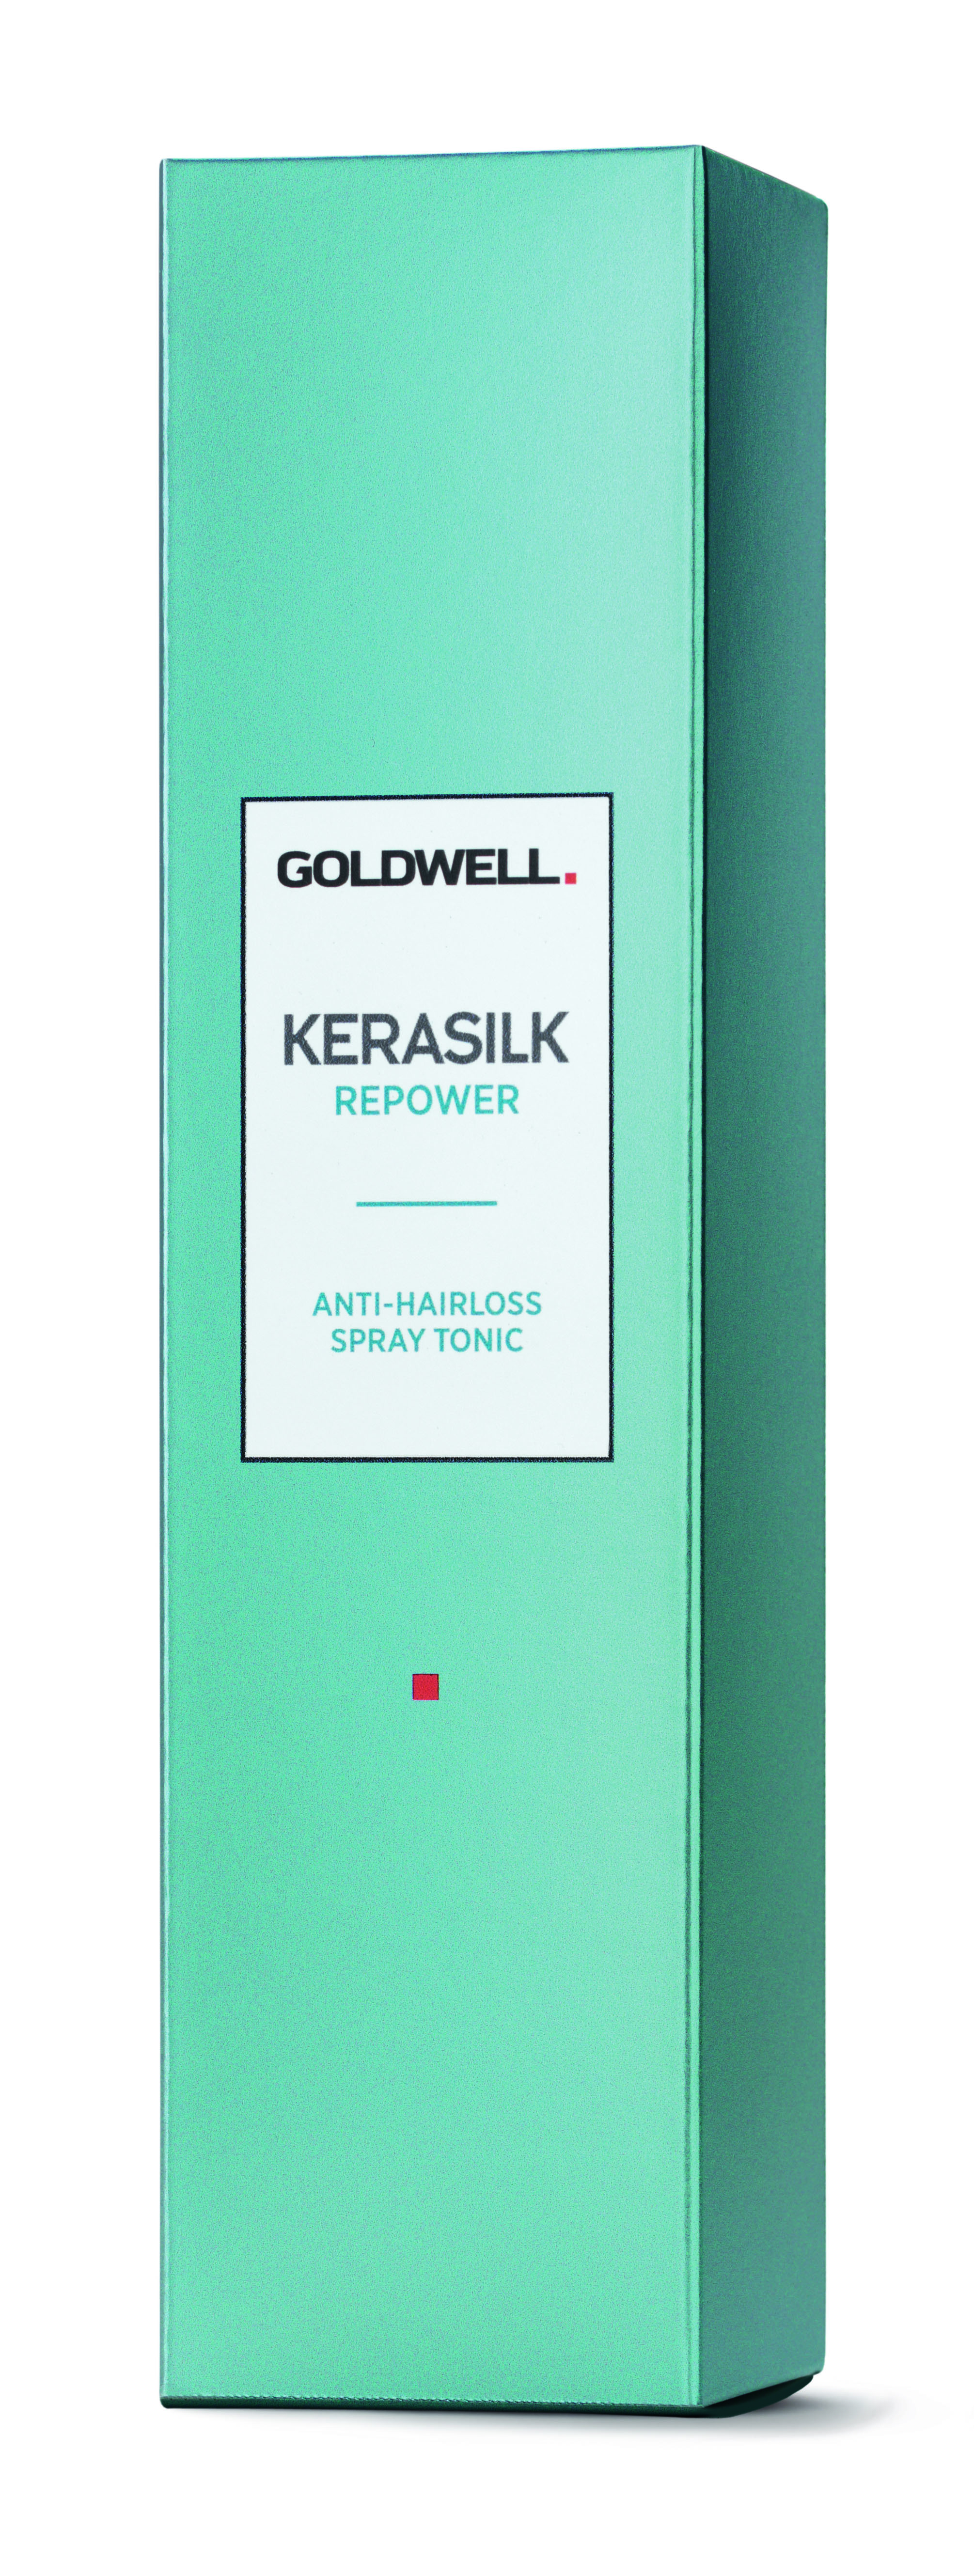 Goldwell Kerasilk Repower Anti-Hairloss Tonic 125ml